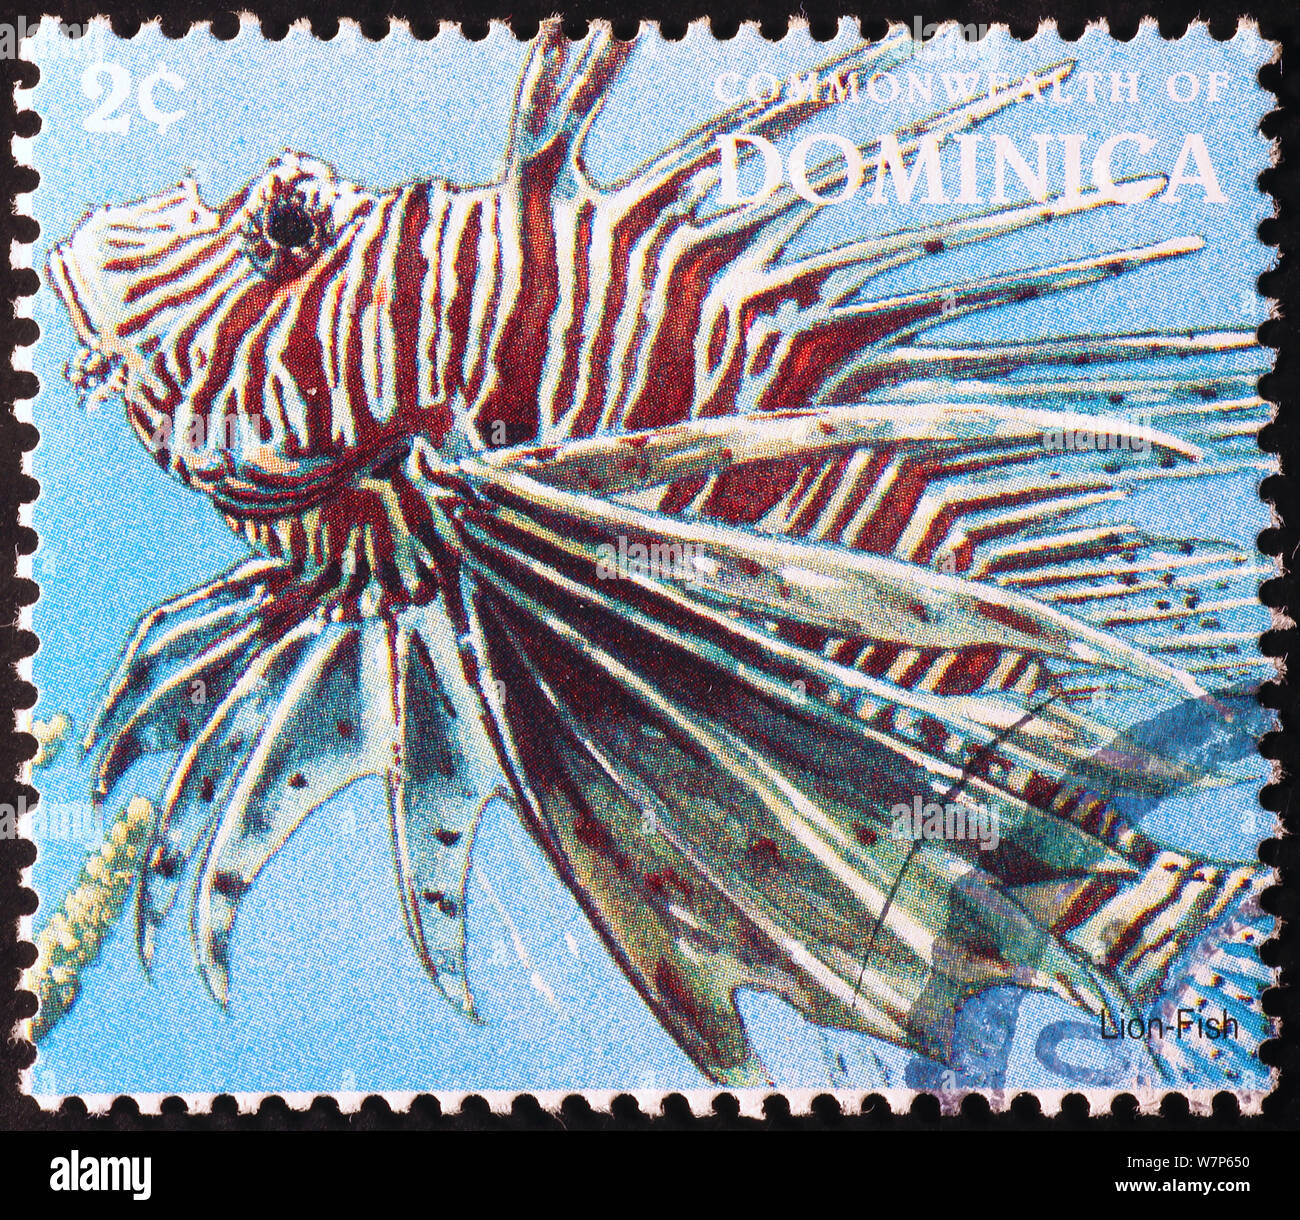 Poisson Lion sur timbre-poste de la Dominique Banque D'Images